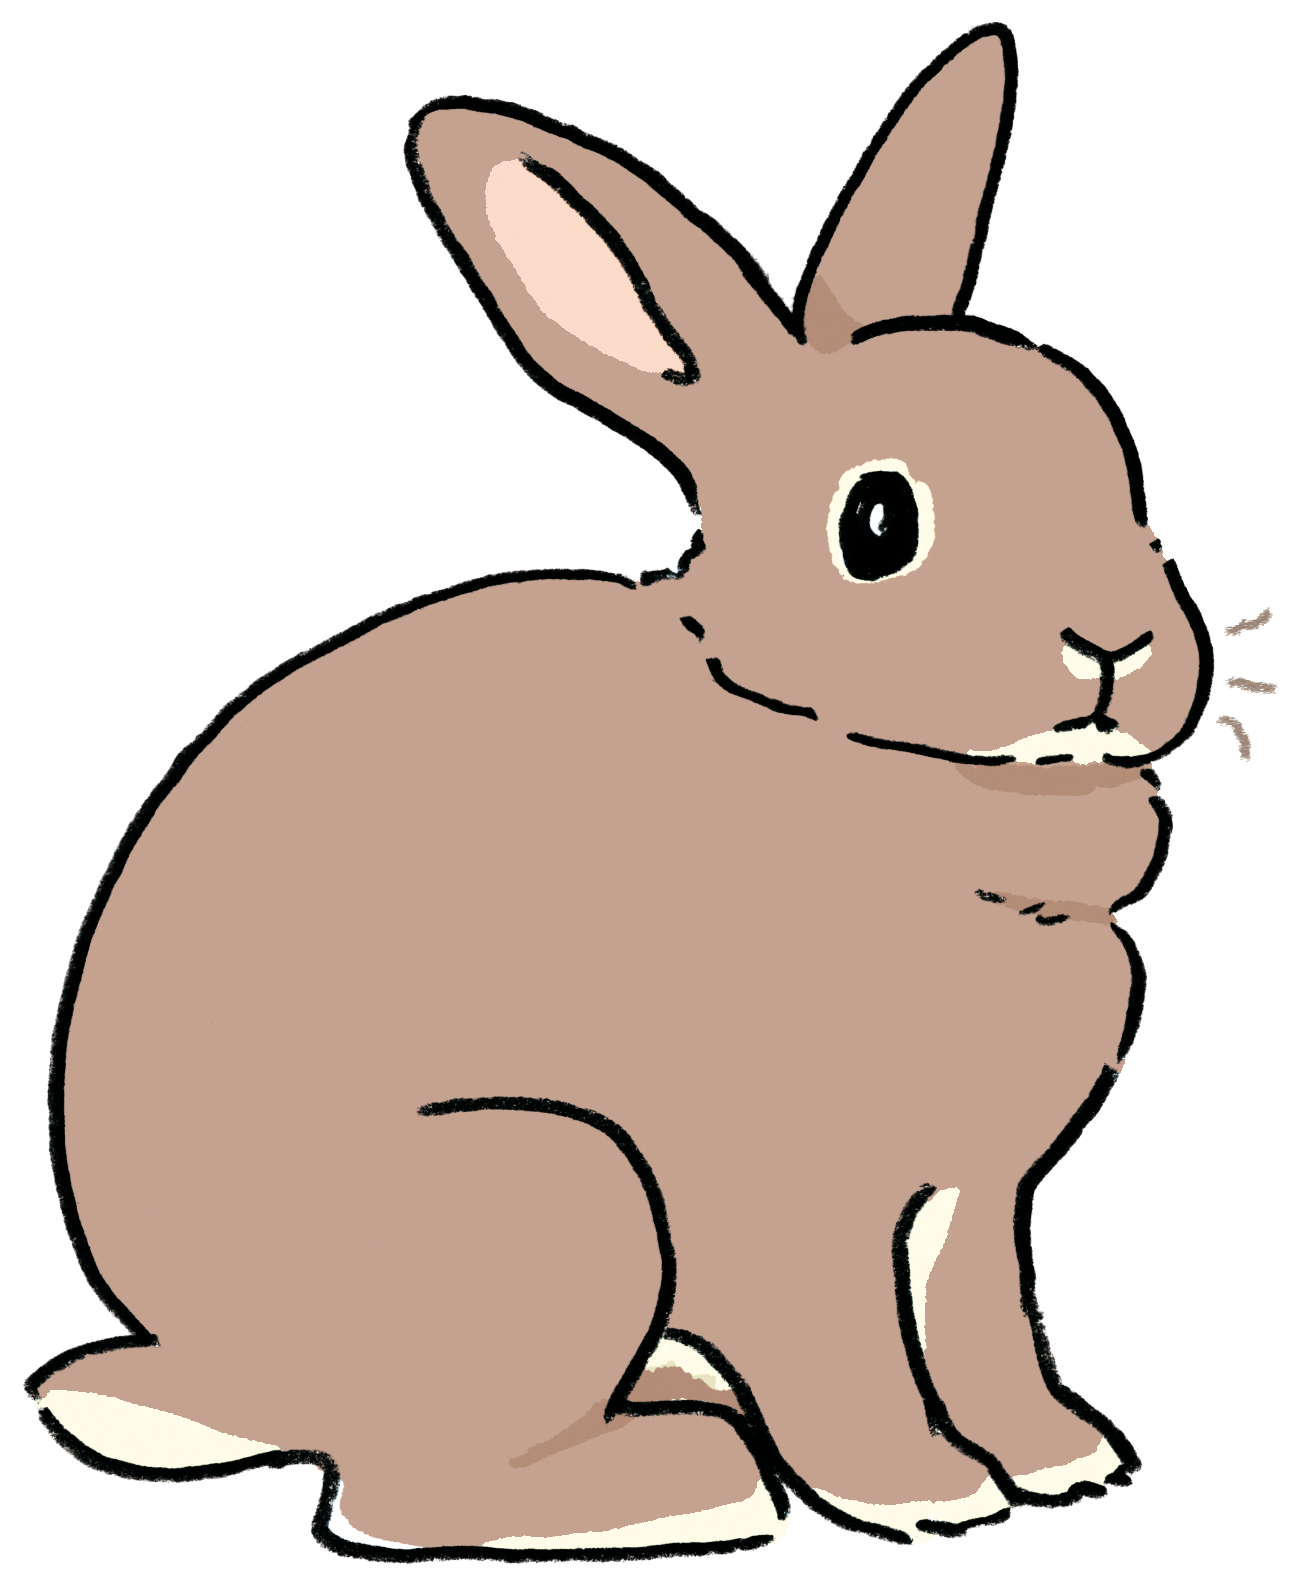 超短毛兔品種有雷克斯兔等等。（圖片來源：遠流提供）